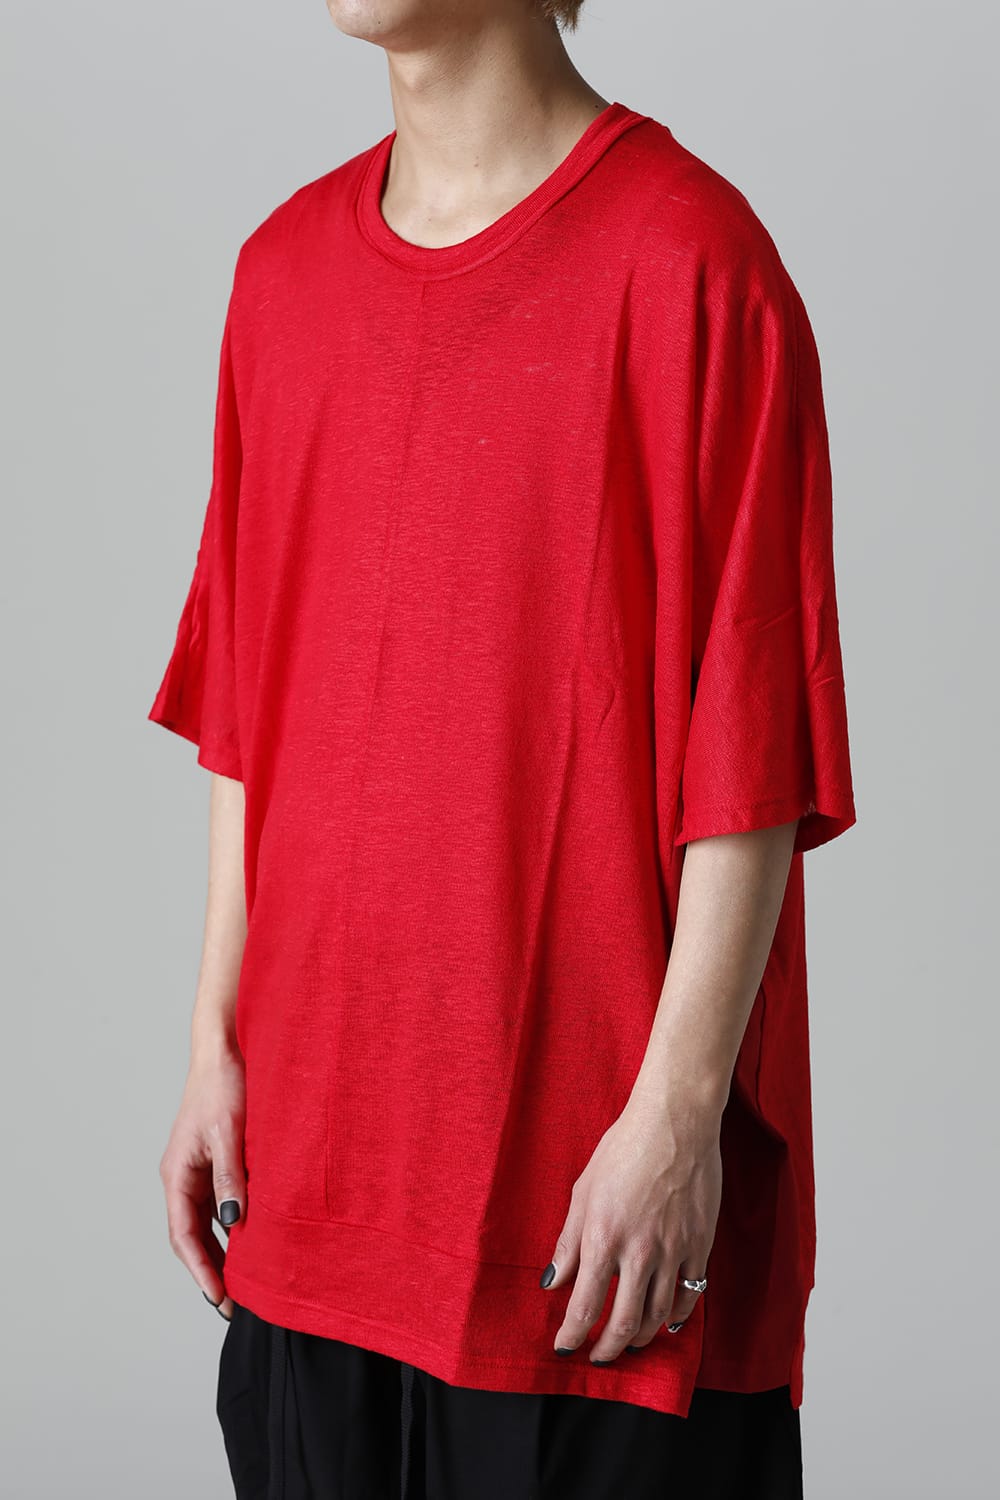 NU-1633-Red | オーバーサイズ ショートスリーブTシャツ レッド | nude